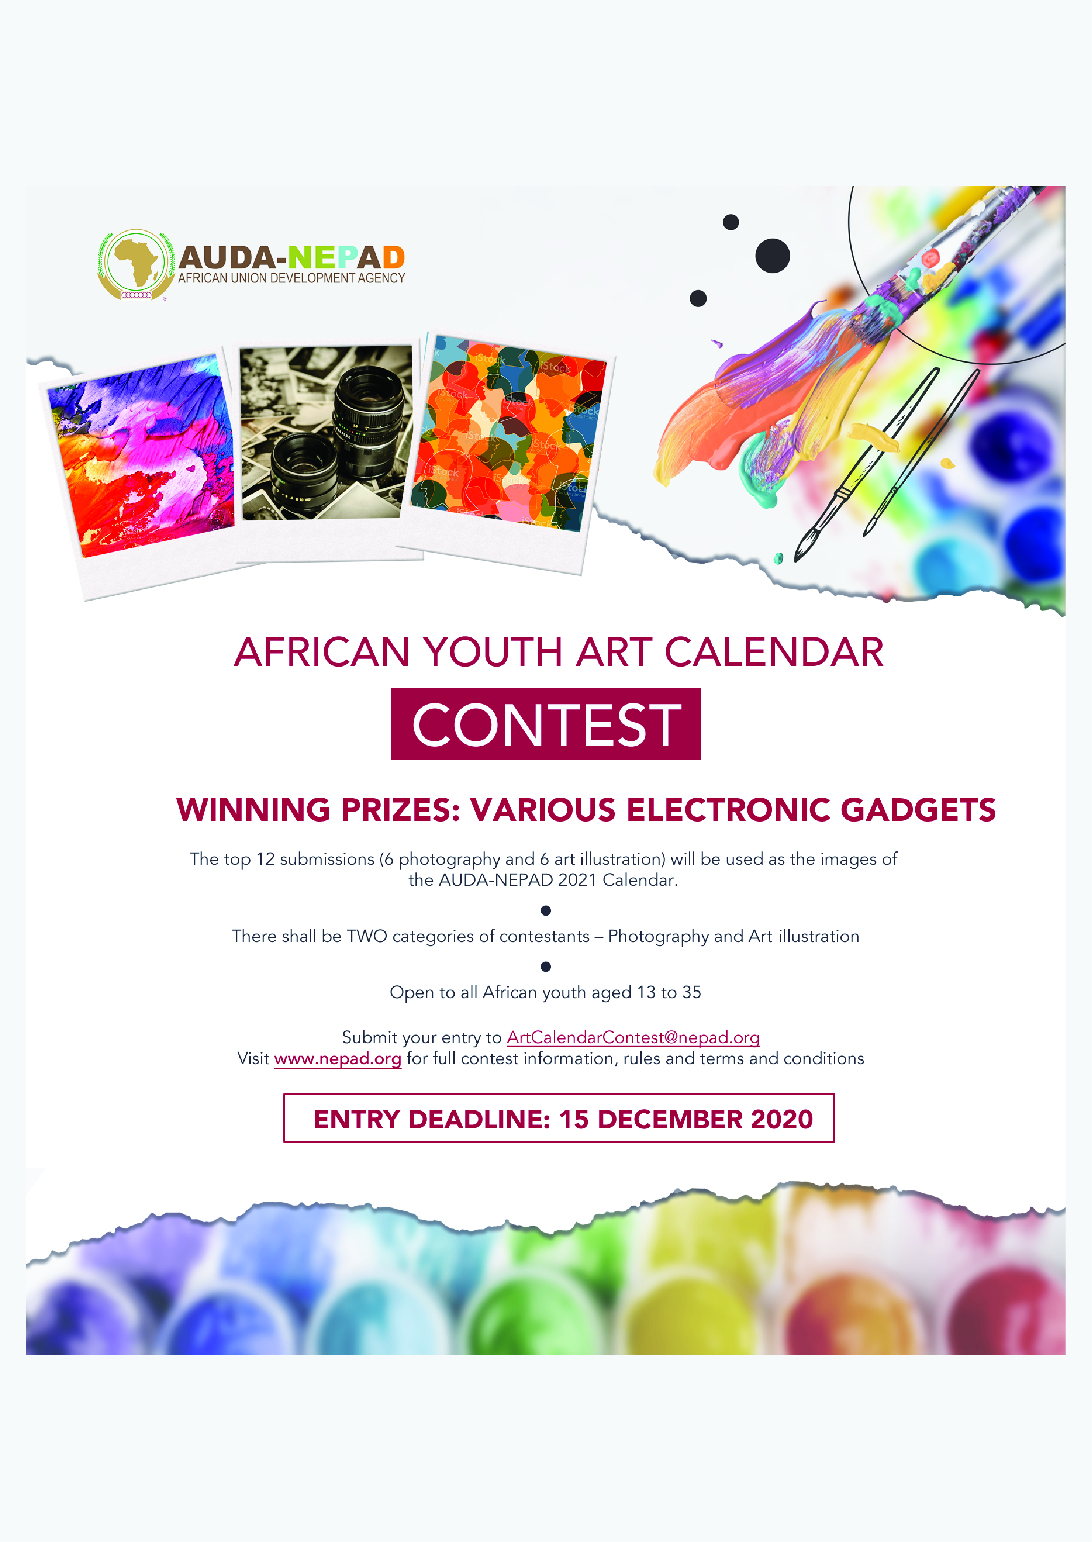 AUDA-NEPAD Concurso Calendário de Arte Juvenil Africana (Portuguese)